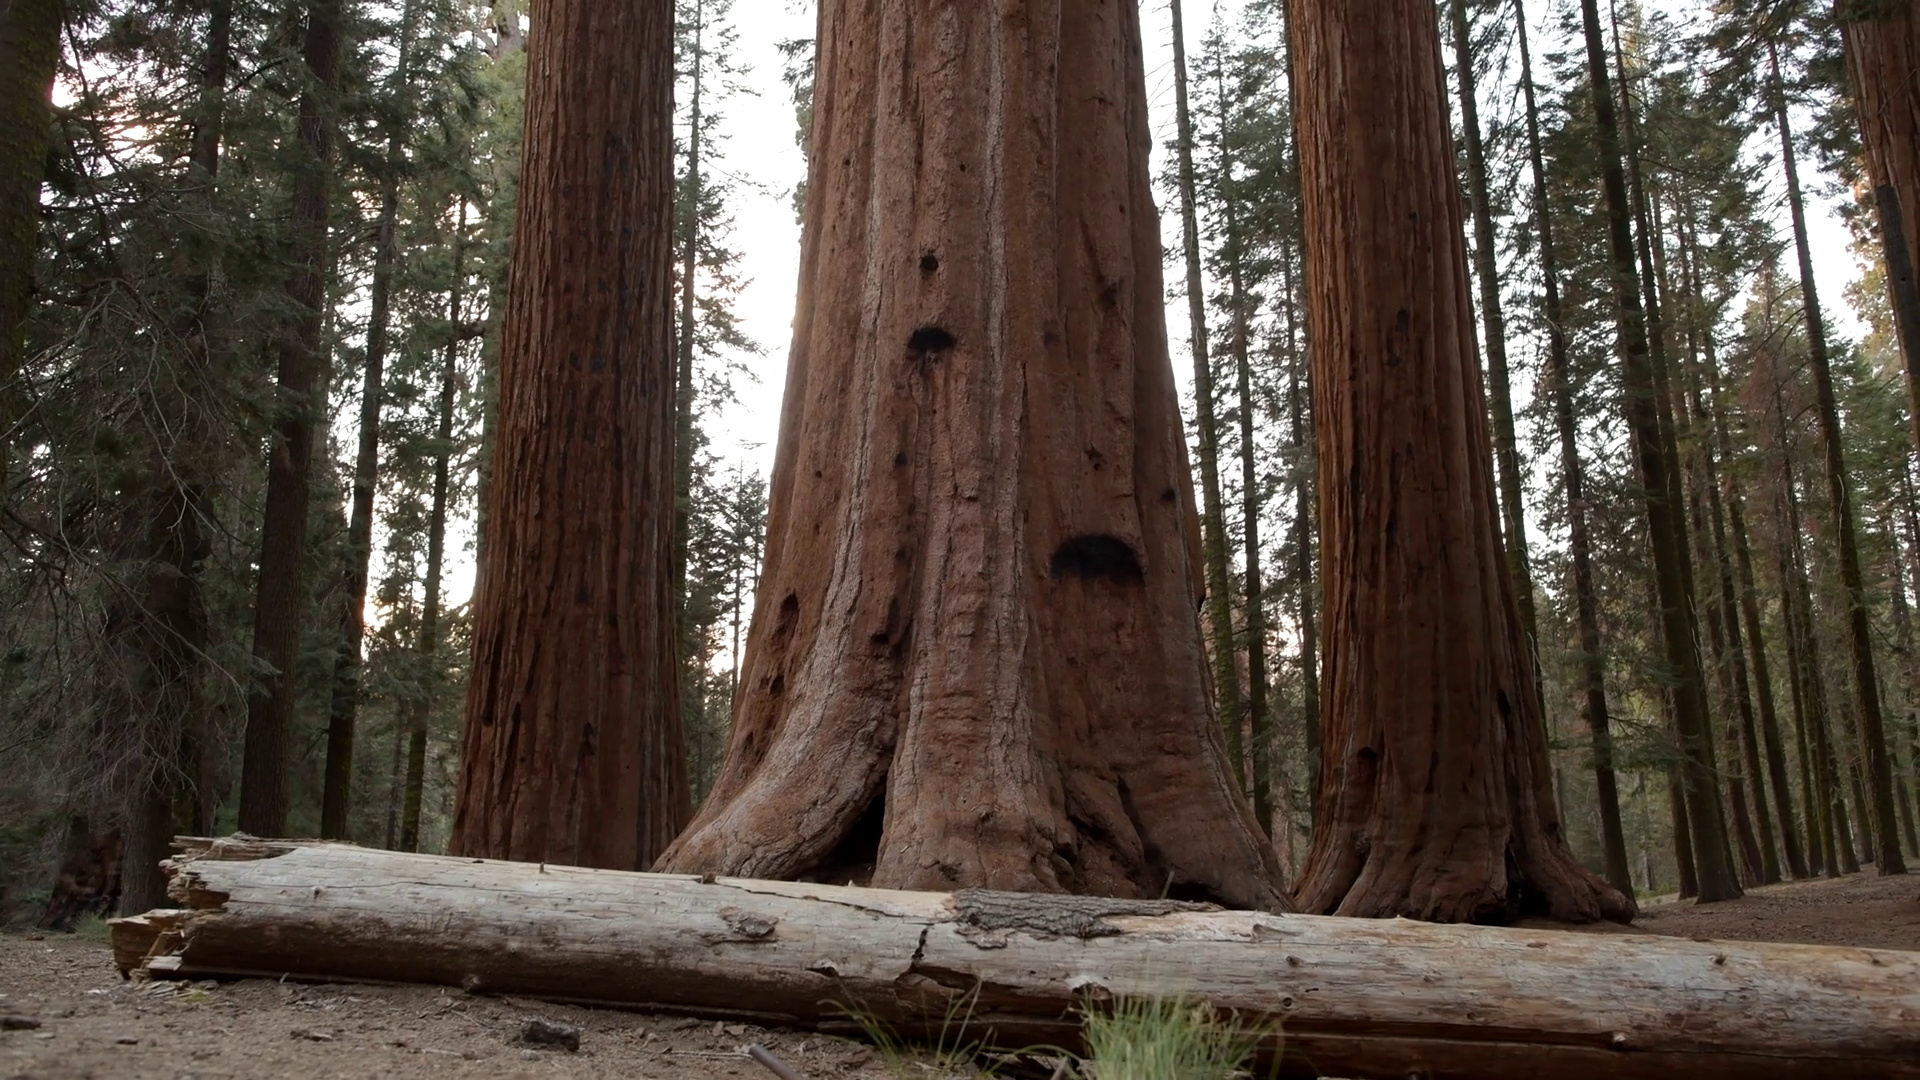 Cedar Tree, Redwood forest, Tranquil landscapes, Nature's wonder, 1920x1080 Full HD Desktop